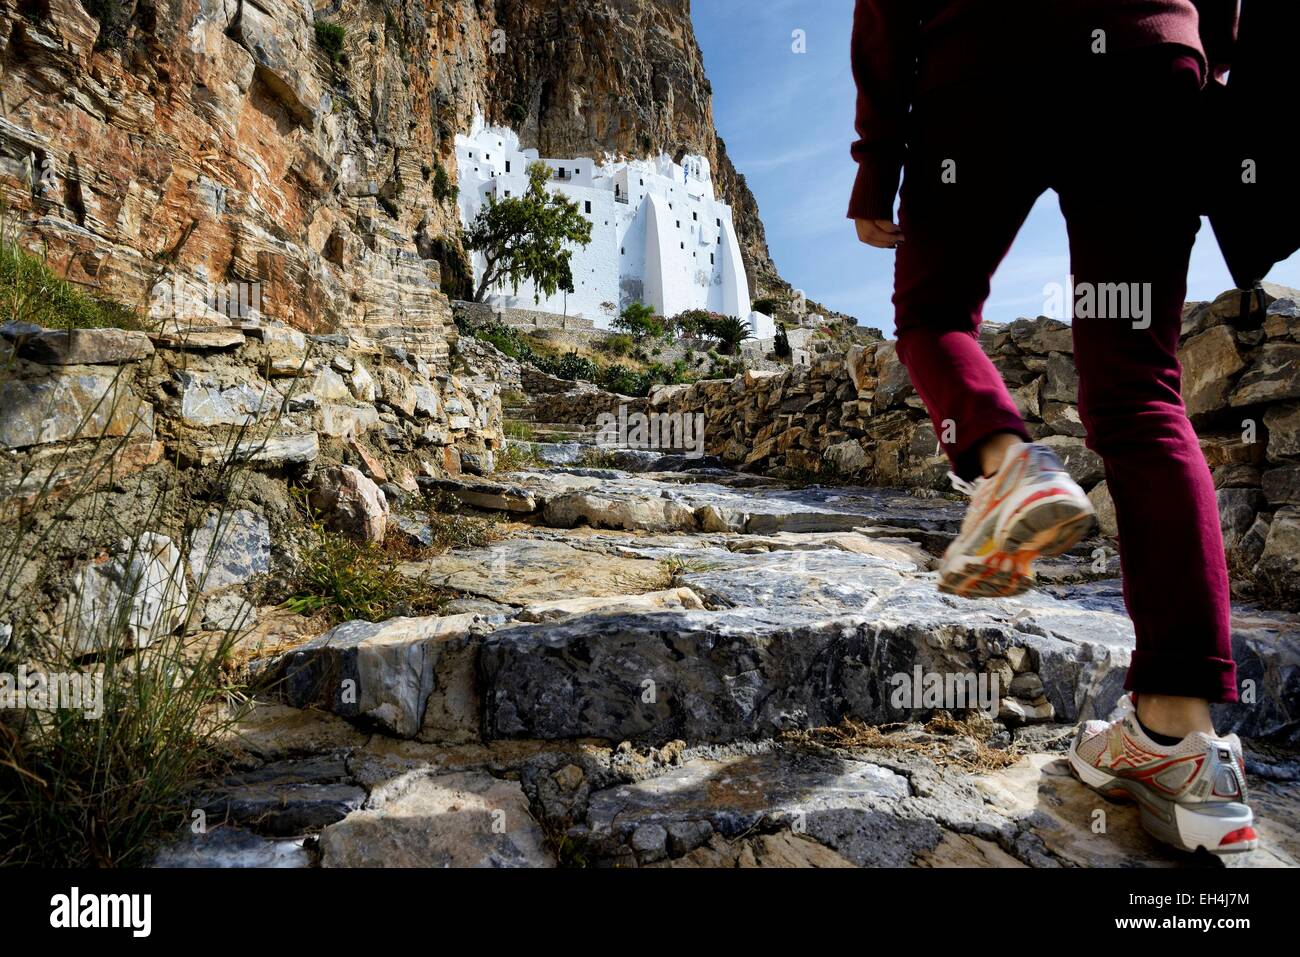 La Grèce, Cyclades, Amorgos island, woman's leg grimper le sentier vers le monastère de Panagia Hozoviotissa (Moni Hozoviotissis, Chozoviotissa) Banque D'Images